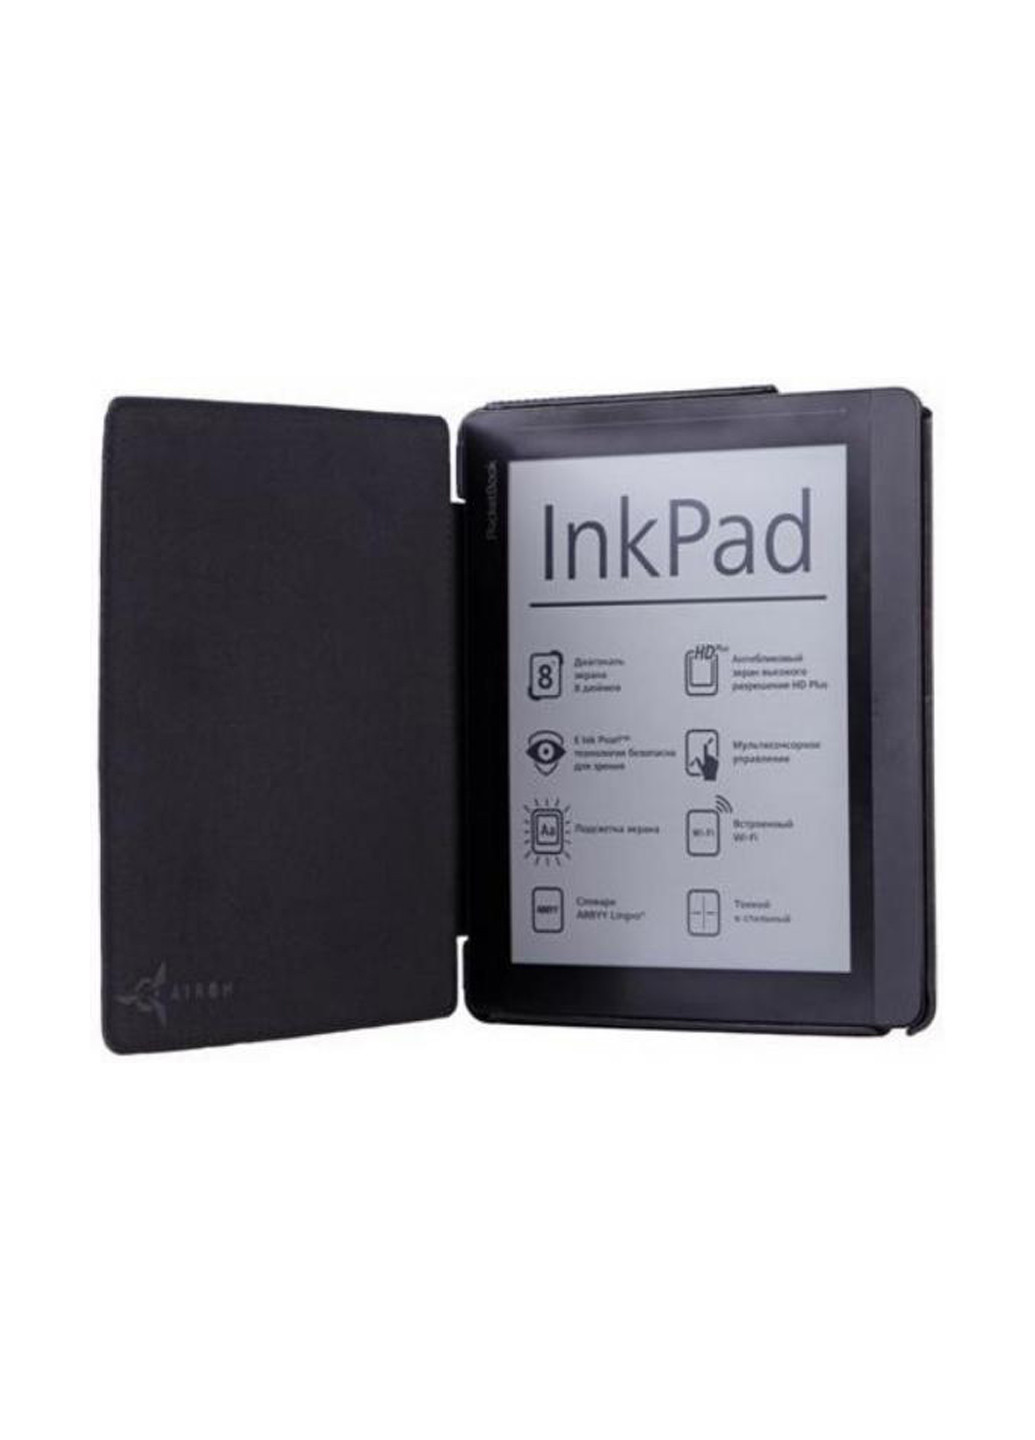 Чехол Premium для PocketBook 840 black (4821784622003) Airon premium для электронной книги pocketbook 840 black (4821784622003) (158554732)